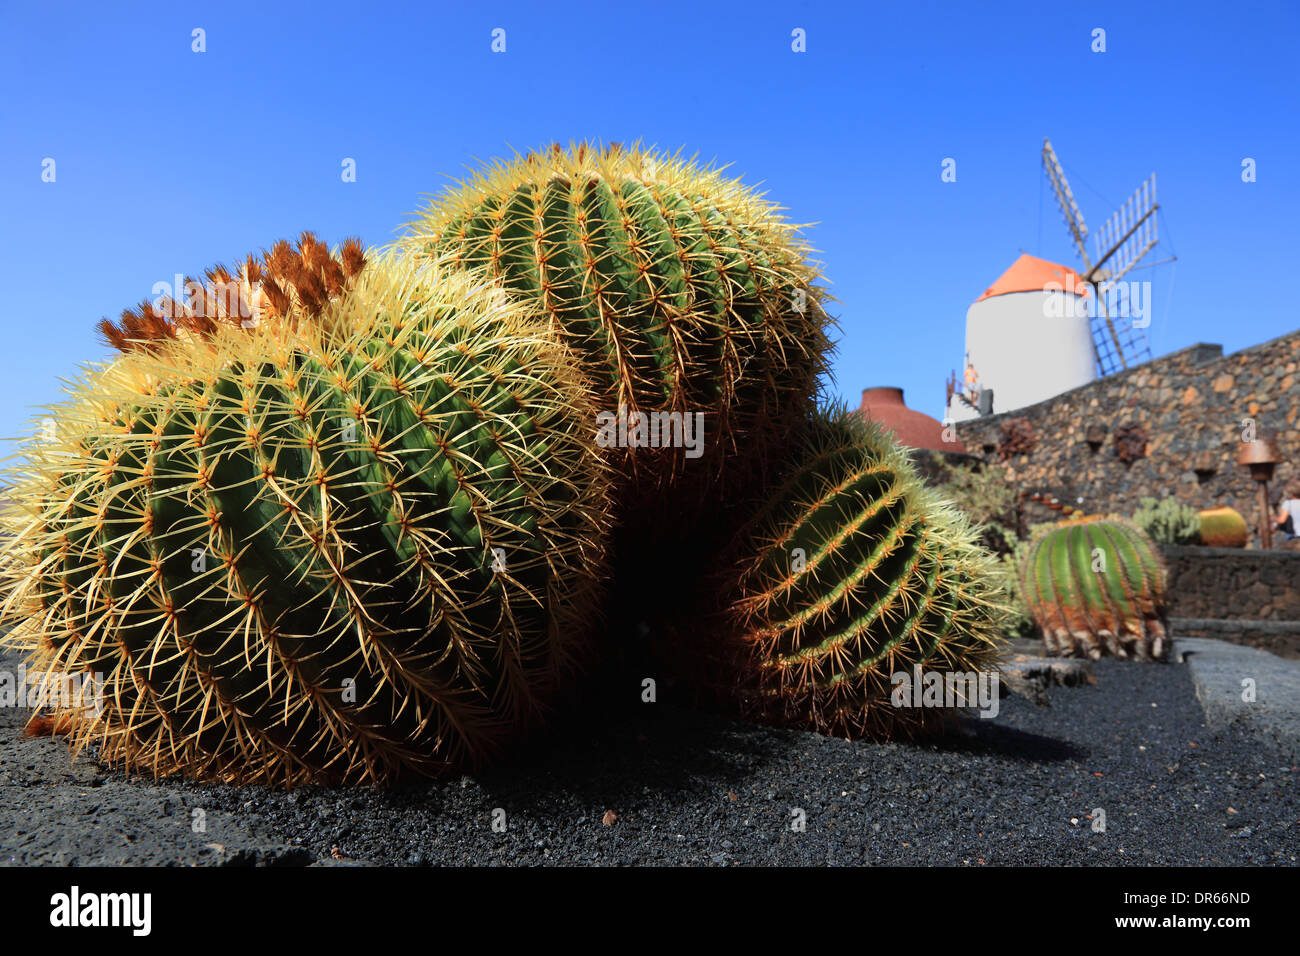 Echinocactus grusonii, Gofio mill, Cactus Garden Jardín de Cactus at Guatiza, Lanzarote, Canary islands, canaries, spain Stock Photo